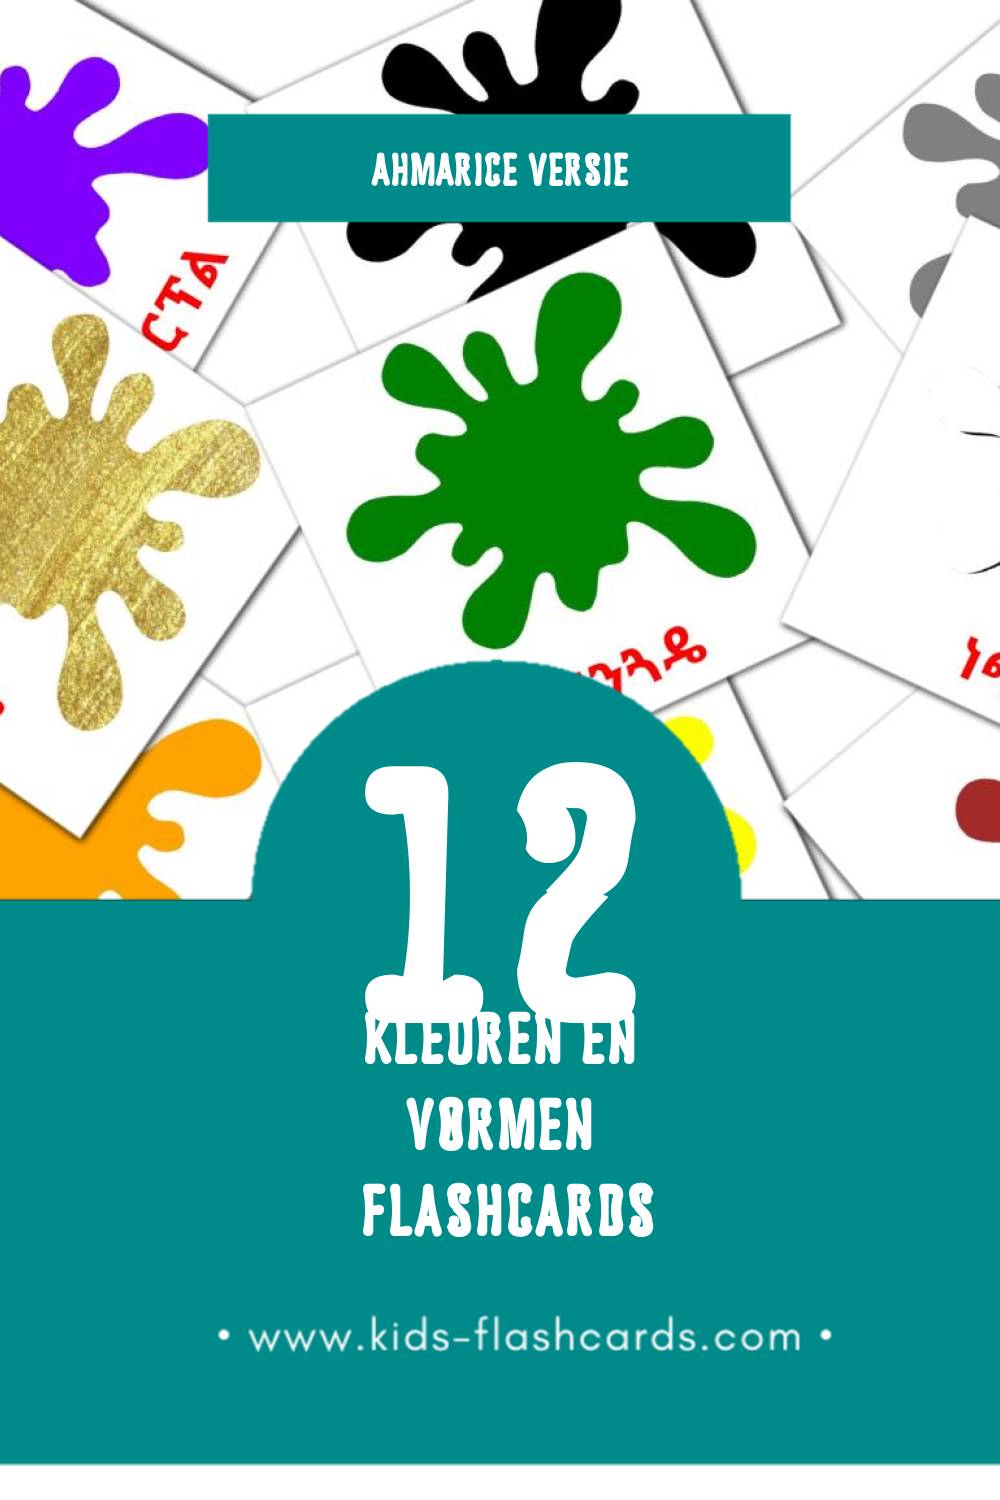 Visuele ቀለሞች እና ቅርጾች Flashcards voor Kleuters (12 kaarten in het Ahmaric)